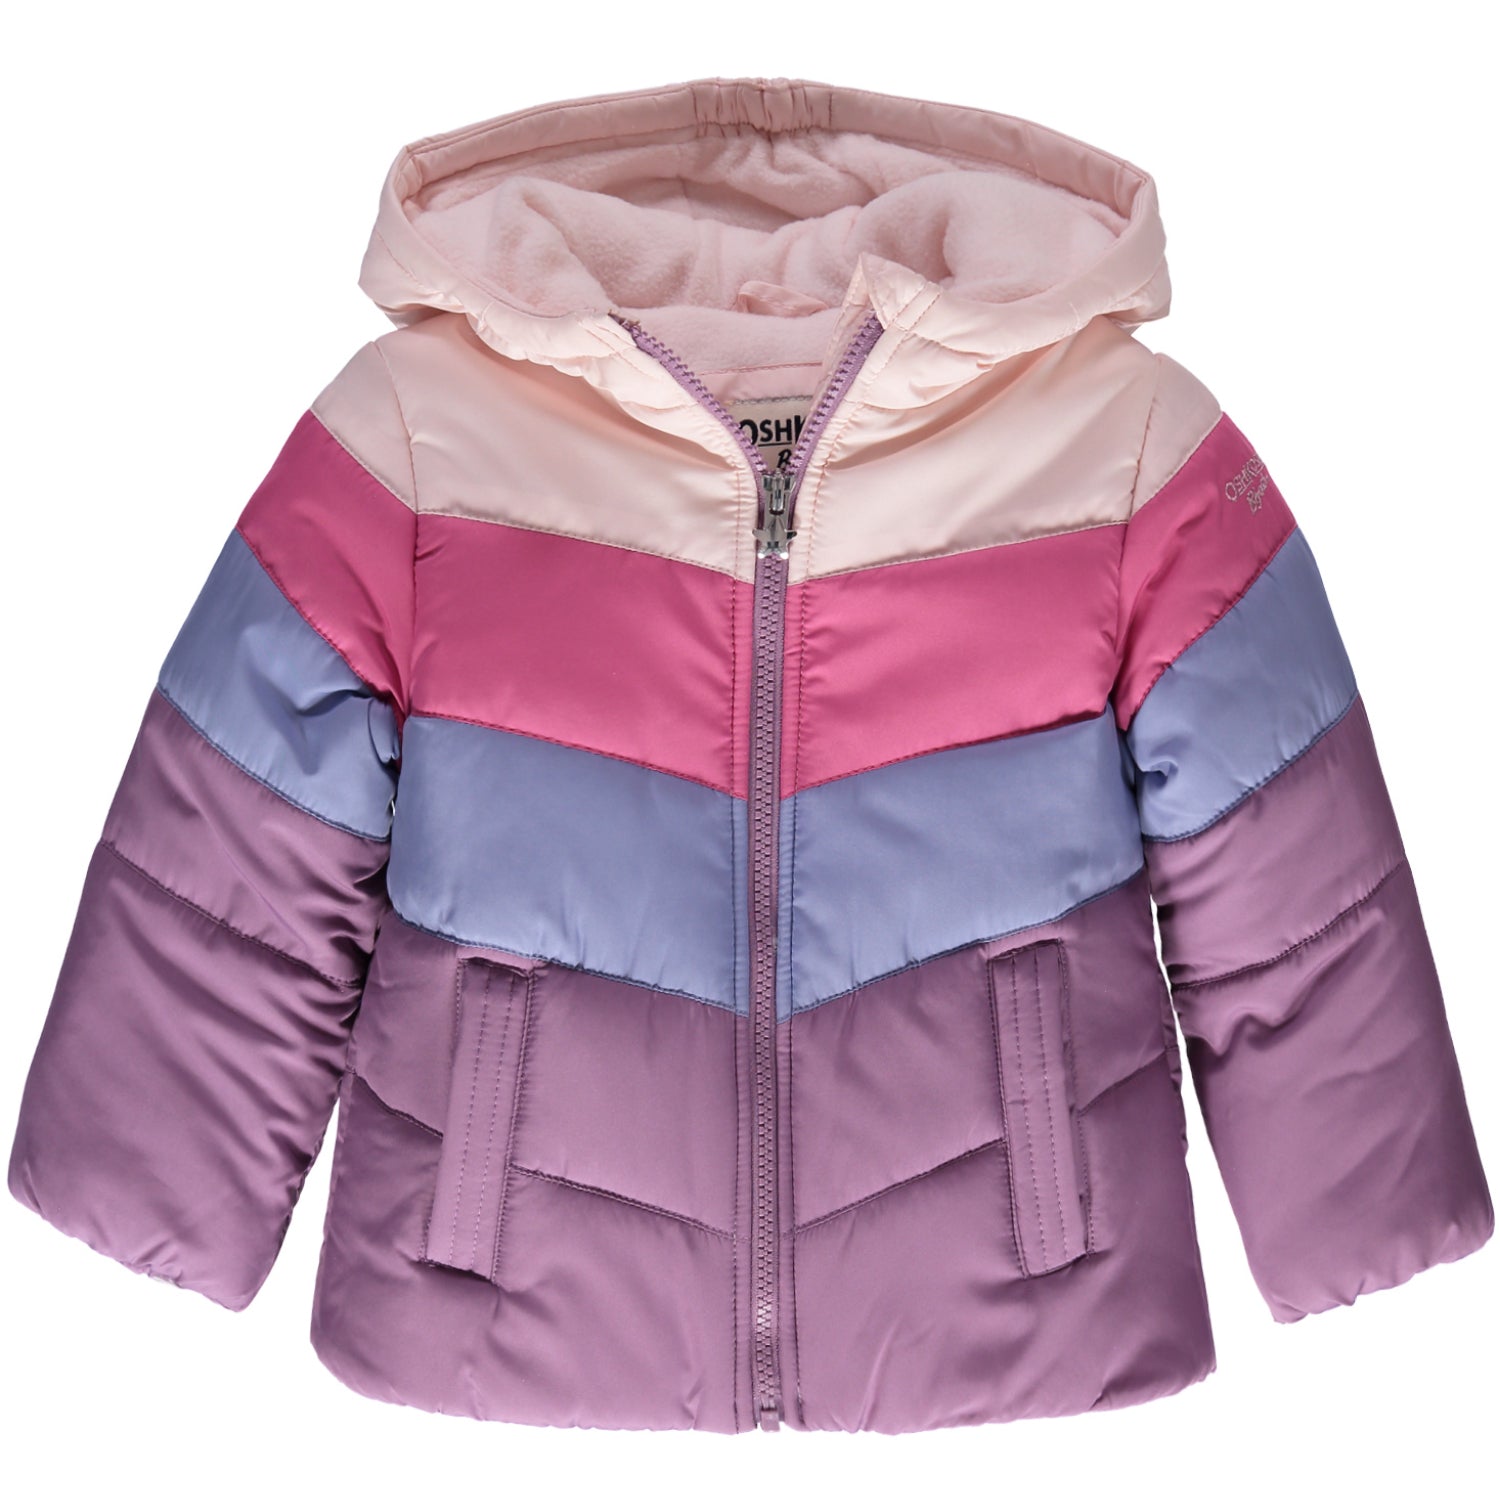 Osh Kosh Girls 7-16 Colorblock Puffer Jacket